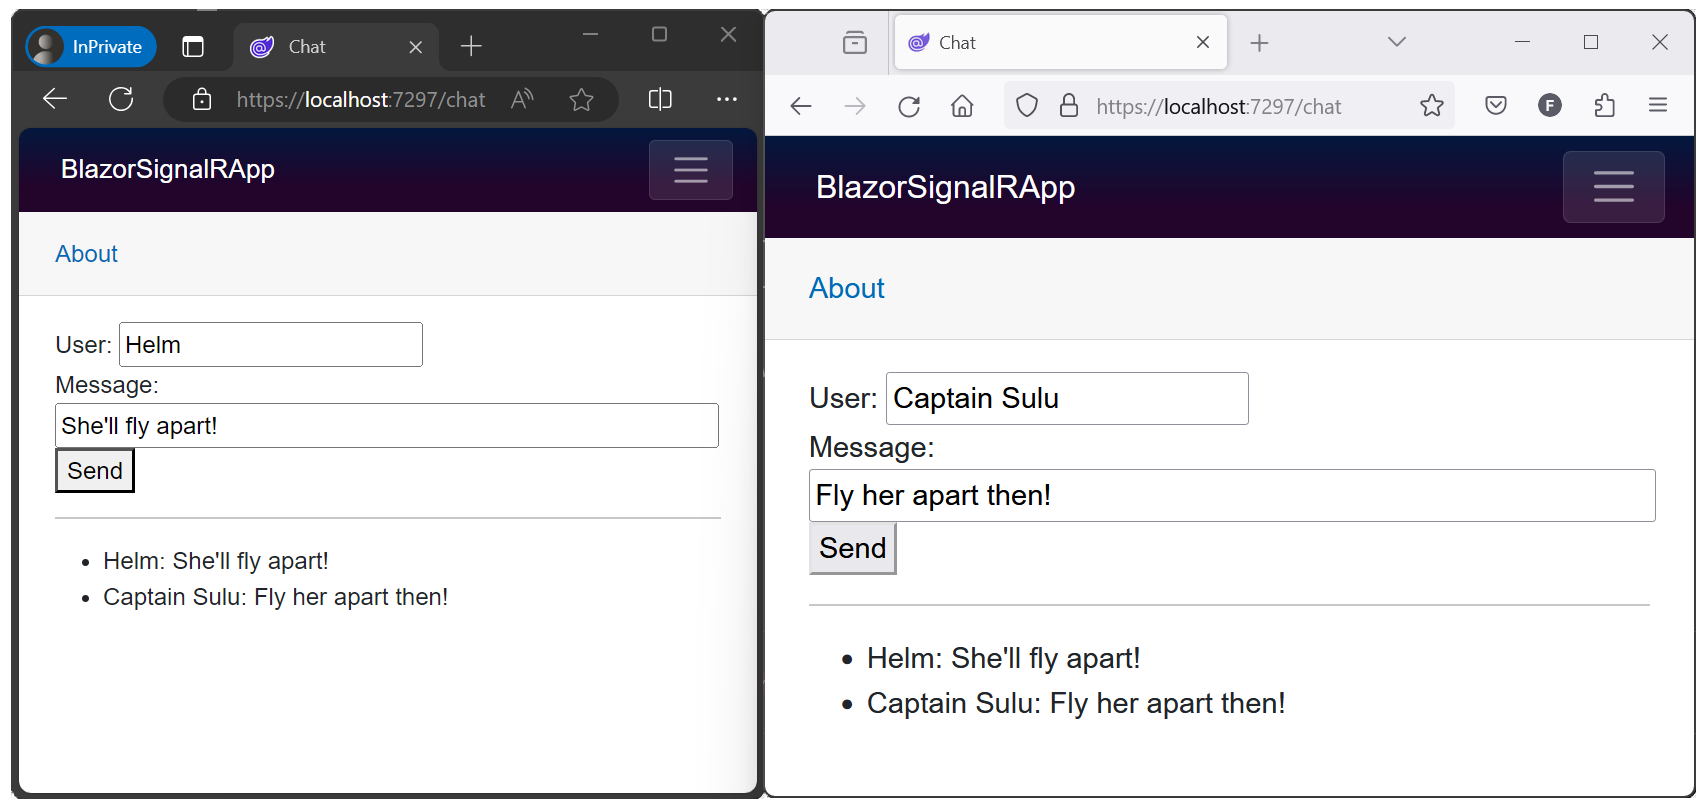 SignalRBlazor 範例應用程式會在兩個瀏覽器視窗中開啟，其中顯示交換的訊息。